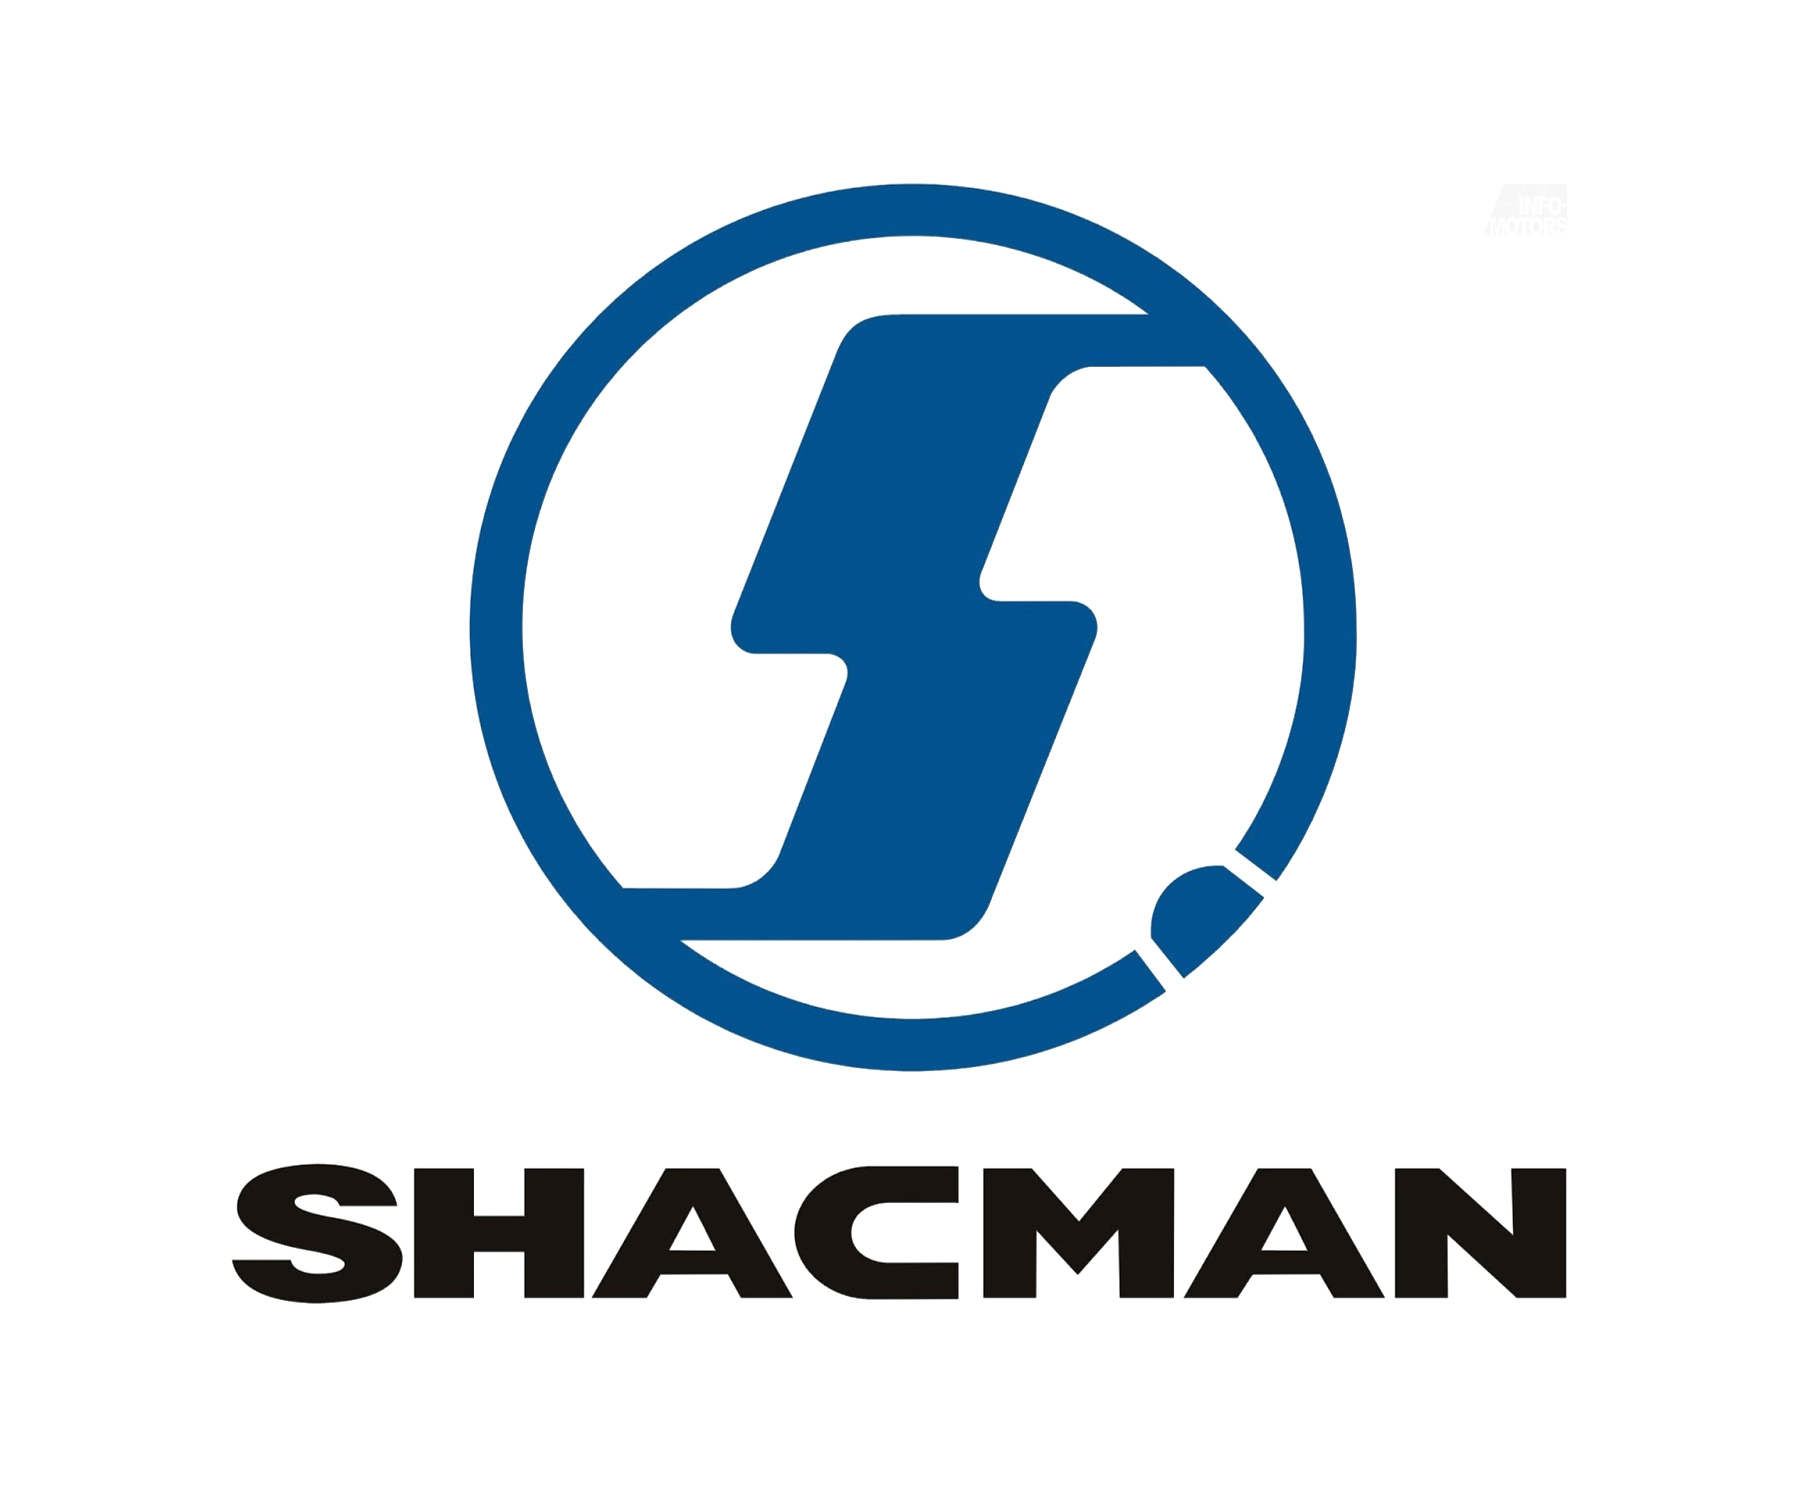 ремонт двигателя shacman, ремонт двигателей shacman, ремонт двигателя шакман, ремонт двигателей шакман